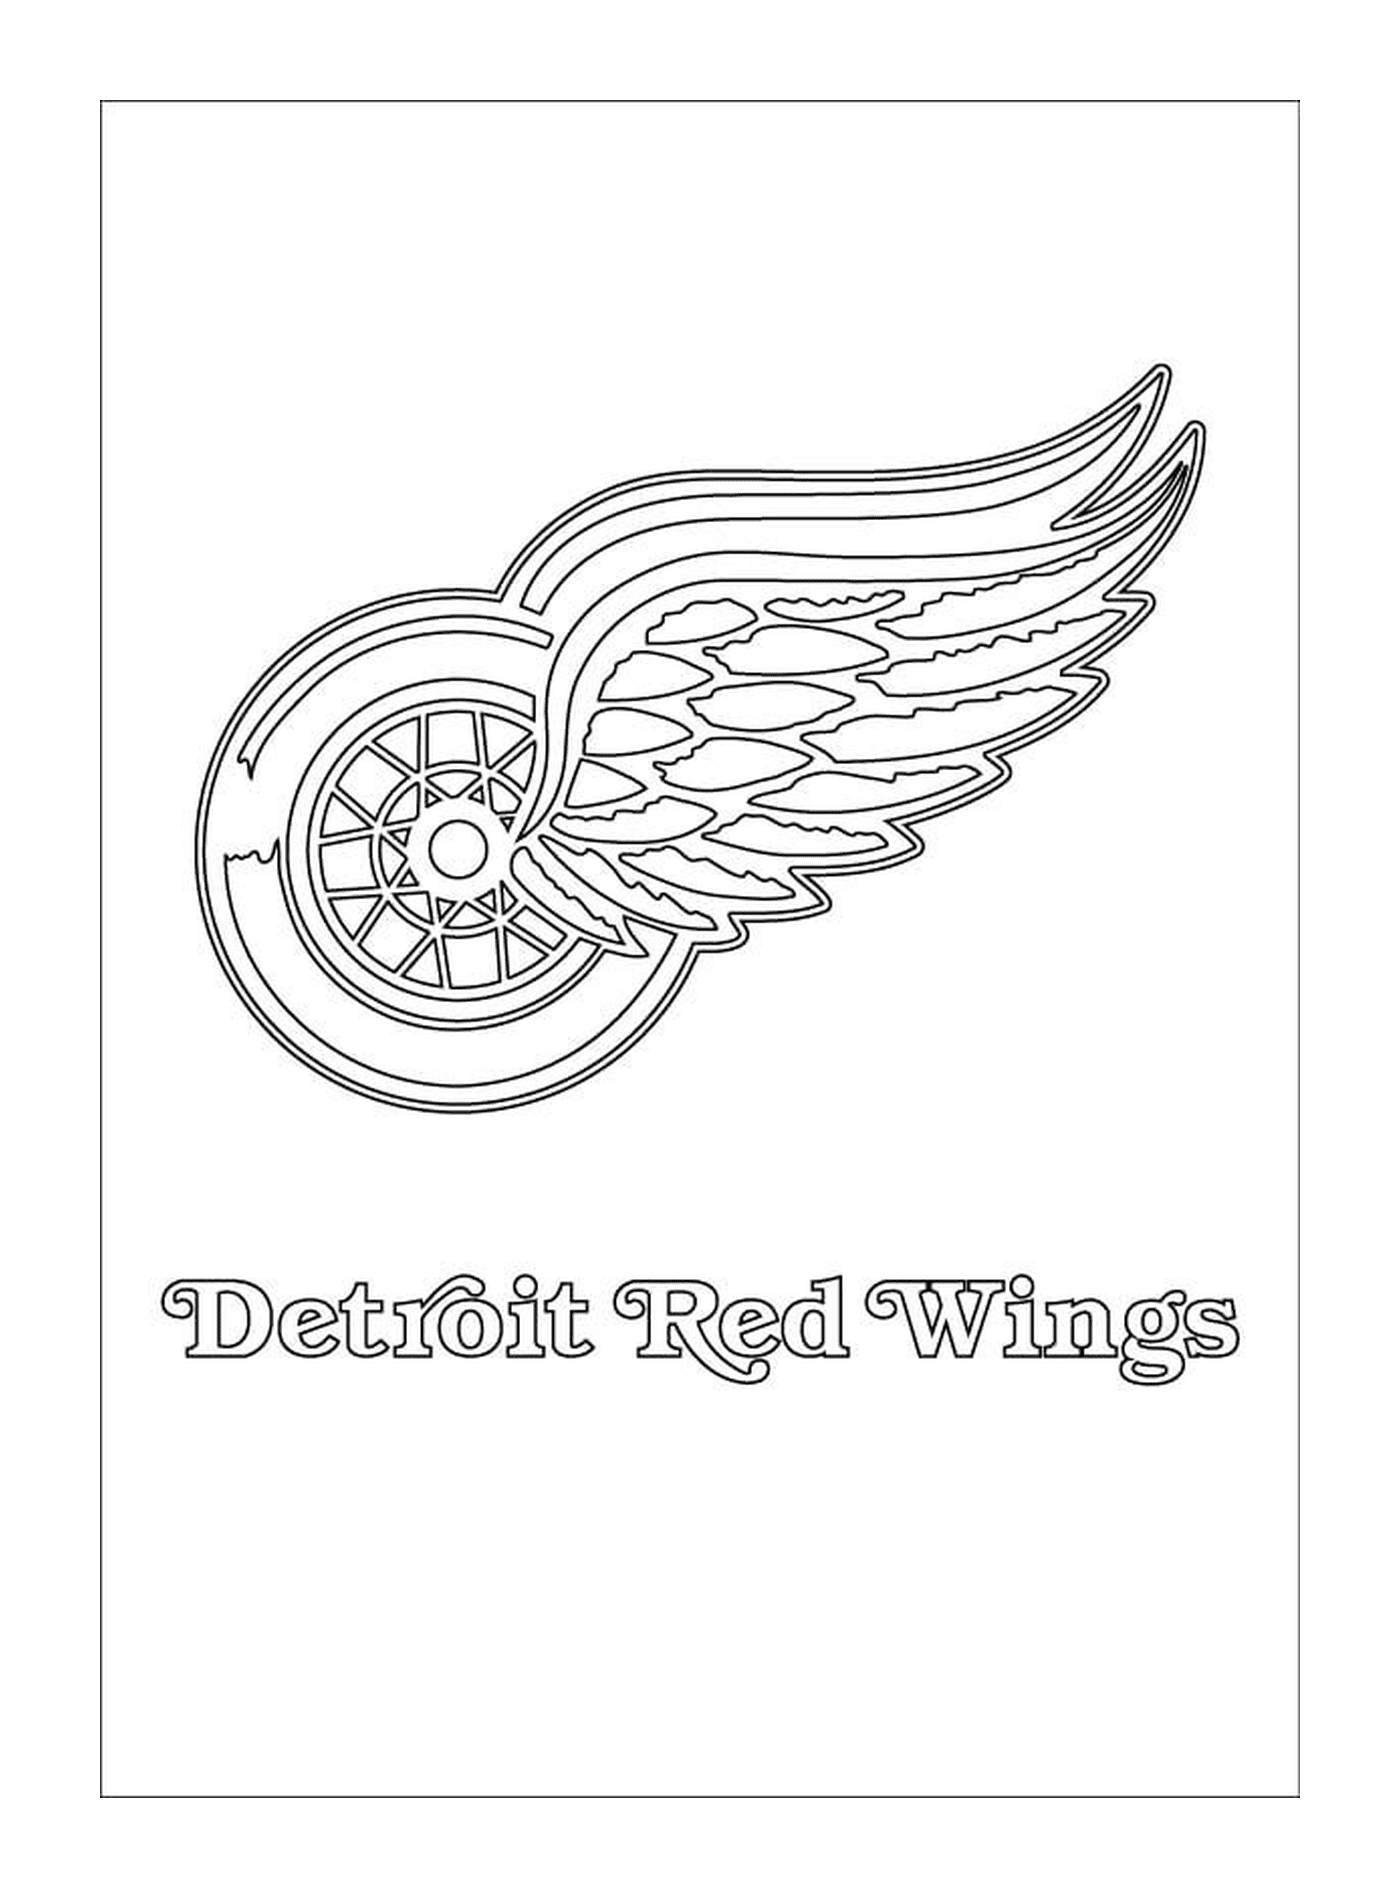  Логотип < < Ред Крылья Детройта > > 